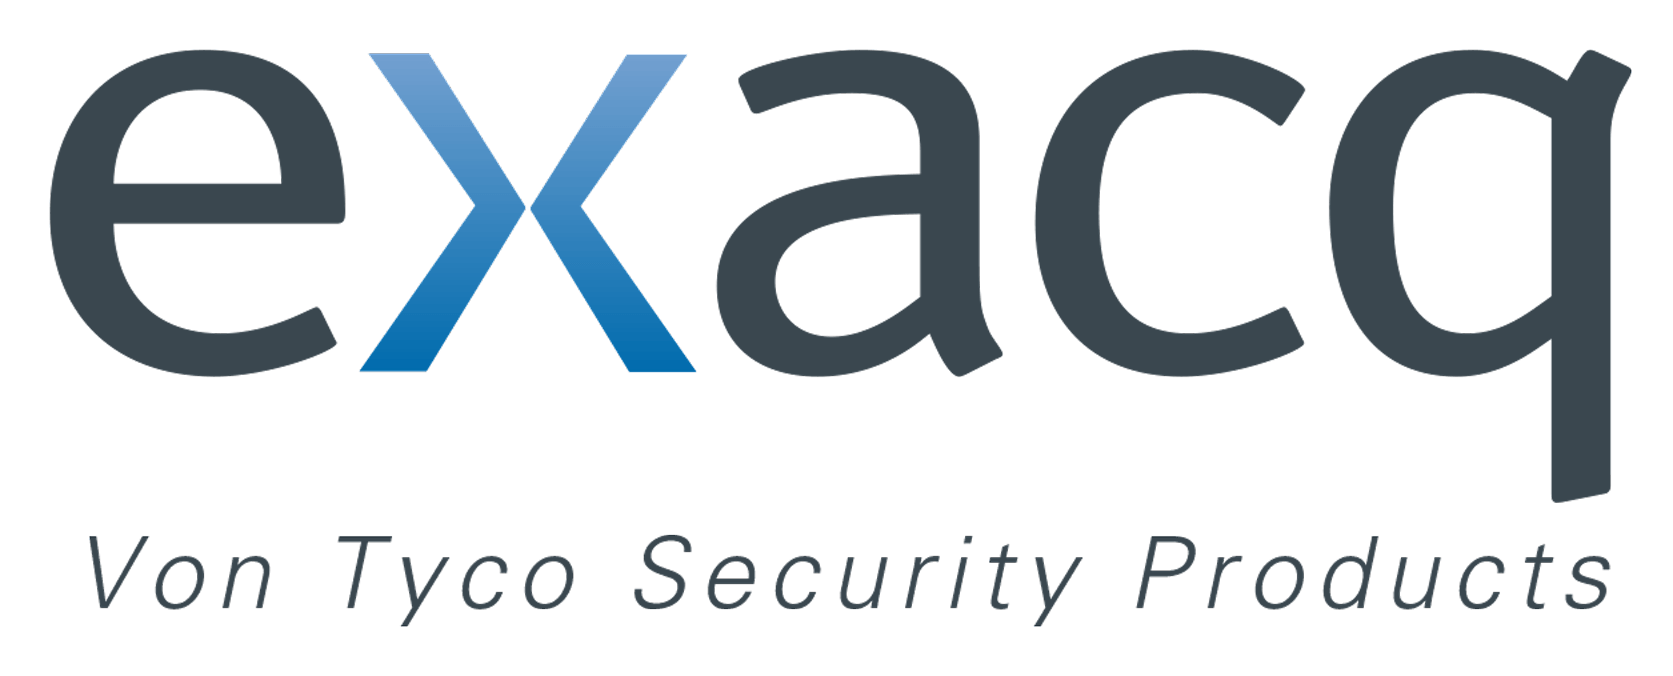 Tyco Logo - Exacq Company Logos | Exacq from Tyco Security Products